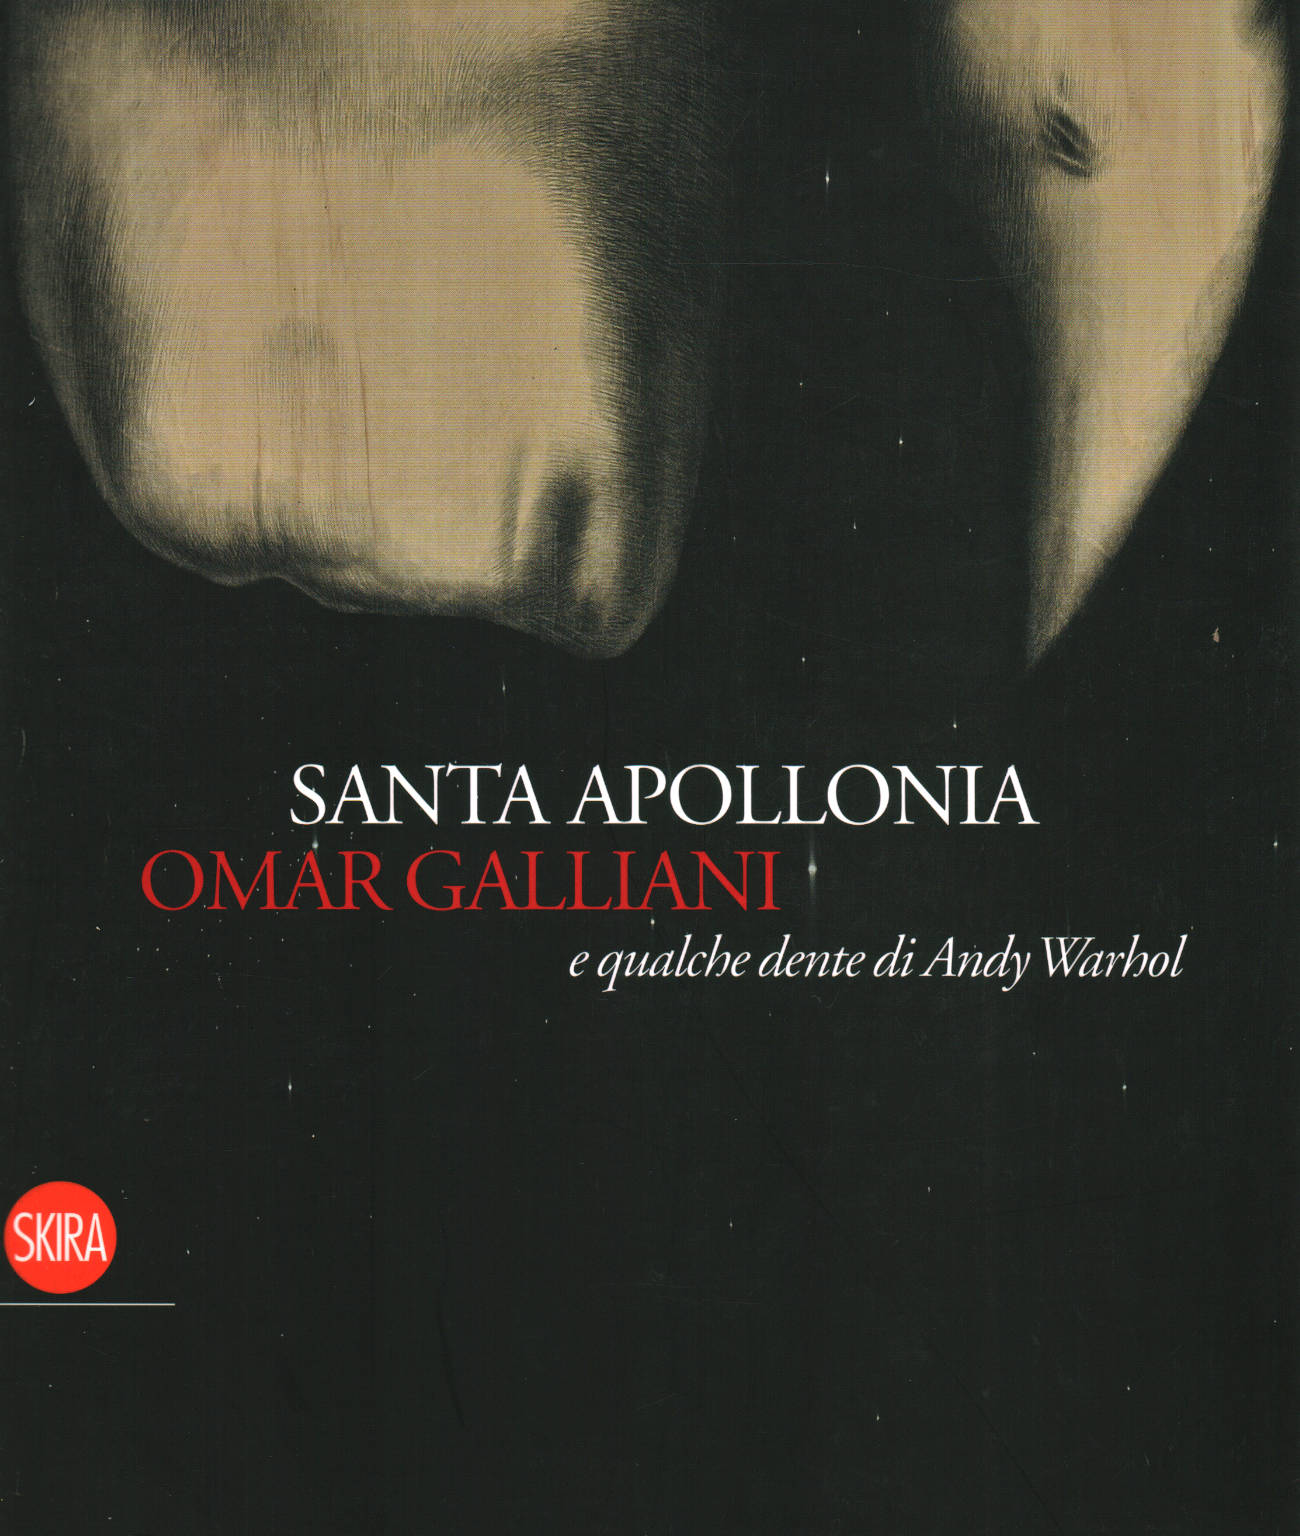 Santa Apollonia,Omar Galliani e qualche dente di A, AA.VV